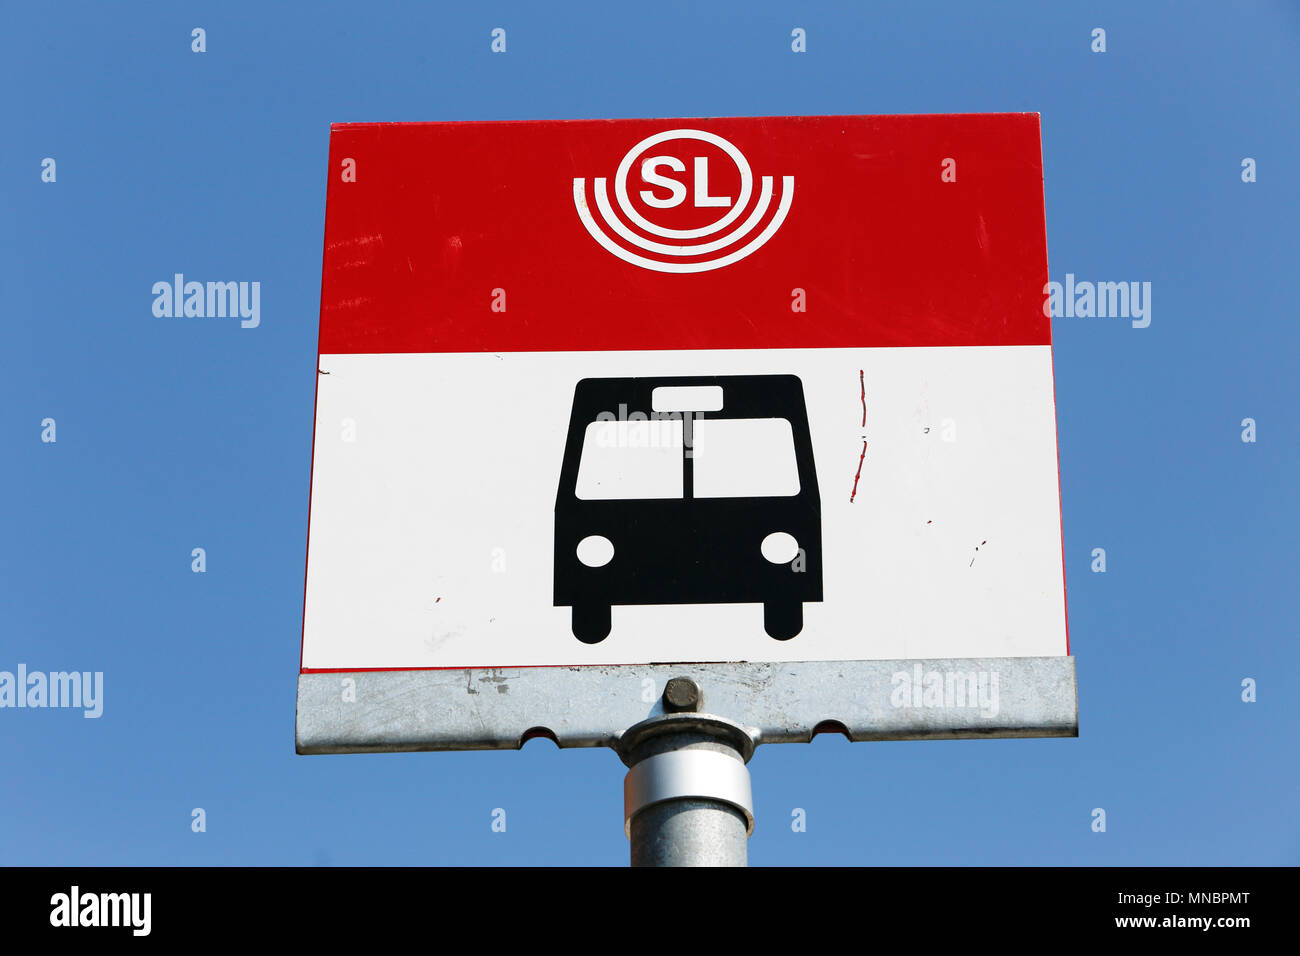 Stoccolma, Svezia - Luglio 8, 2014: Close-up di Stoccolma il trasporto pubblico, SL, fermata bus con un simbolo di bus contro il cielo blu. Foto Stock